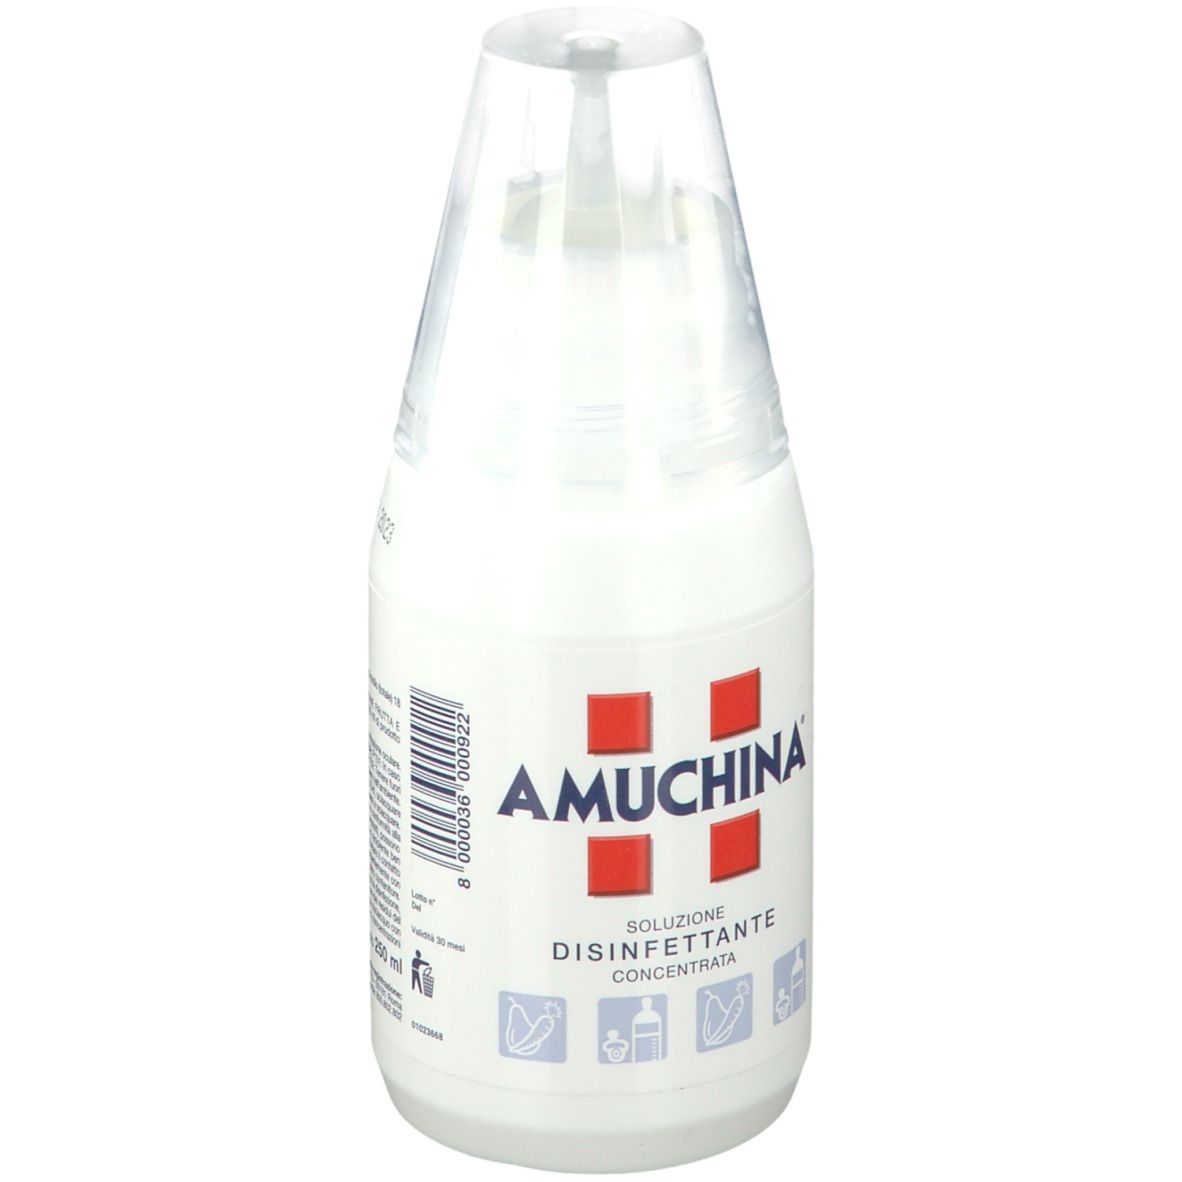 Amuchina Soluzione Disinfettante Concentrata 250 ml